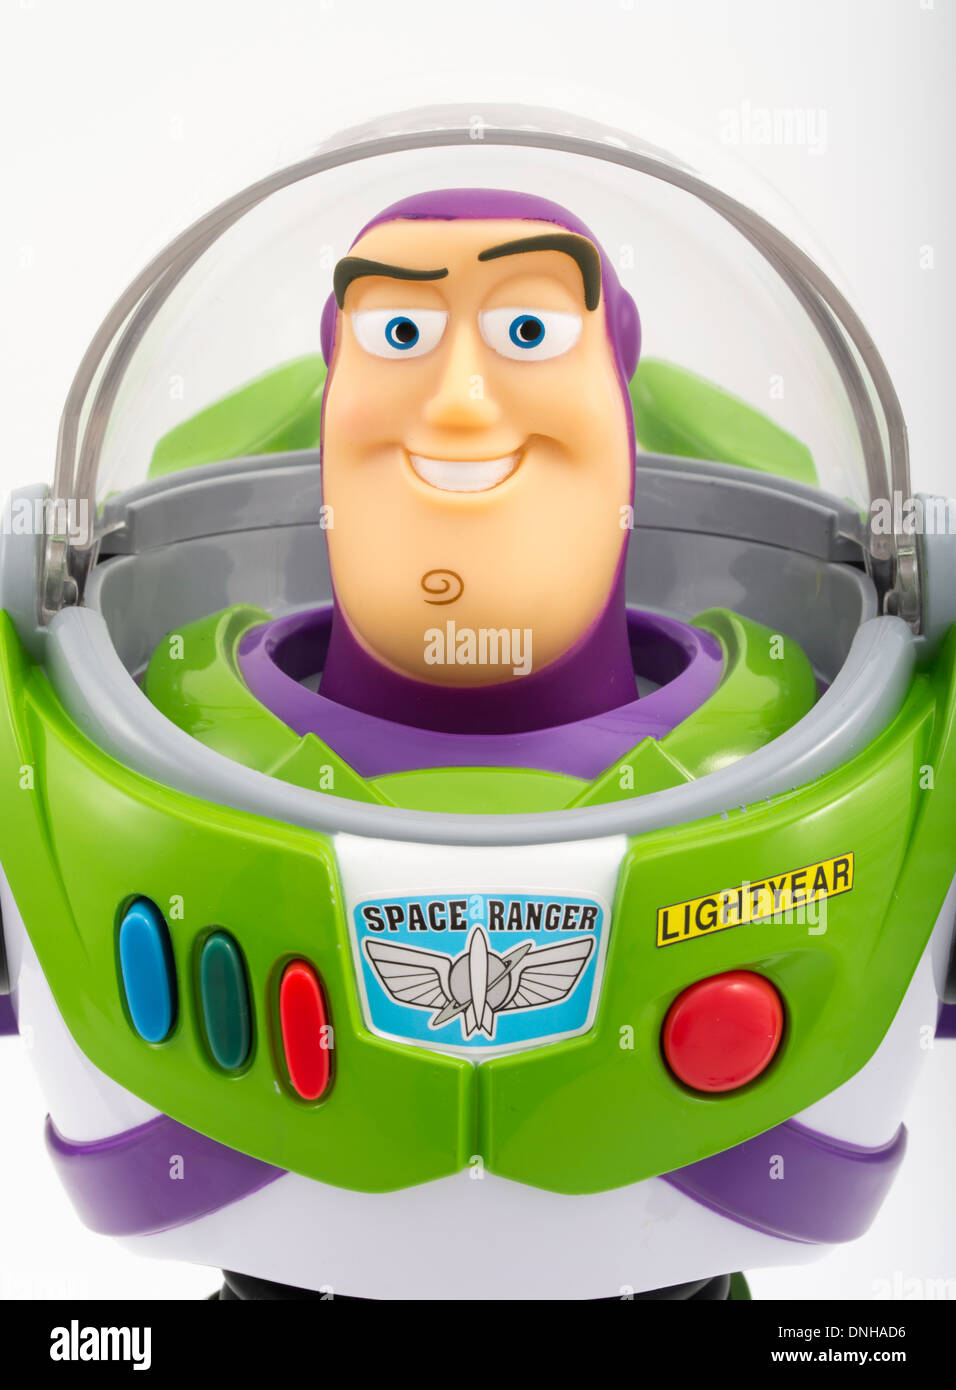 Buzz Lightyear célèbre jouet pour enfants du film Toy Story produit par Thinkway Toys Banque D'Images